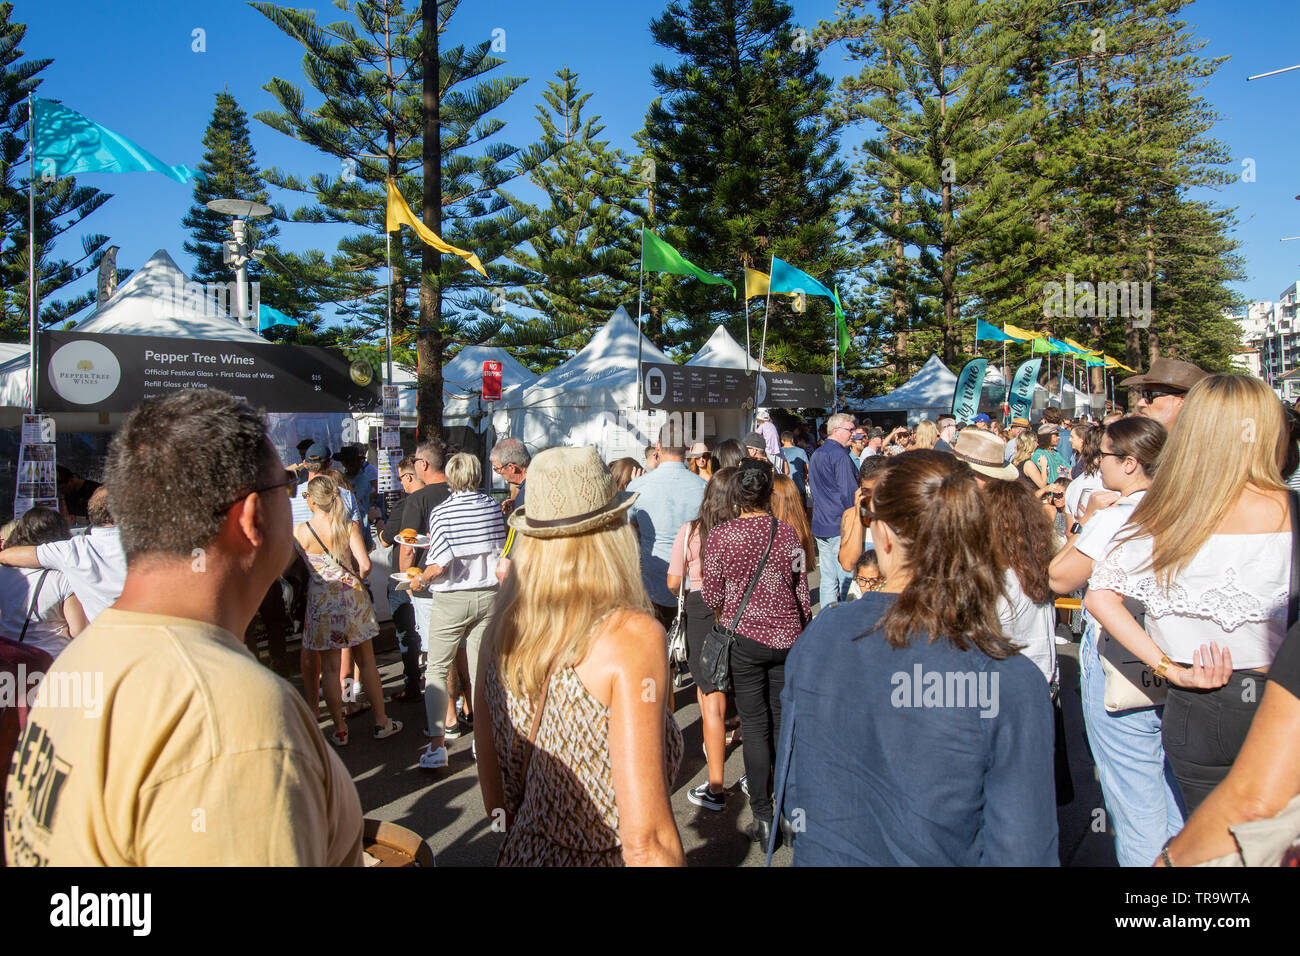 Jährliche Geschmack von Manly Essen und Wein Festival in den Strassen von Manly Beach, Sydney, Australien statt Stockfoto